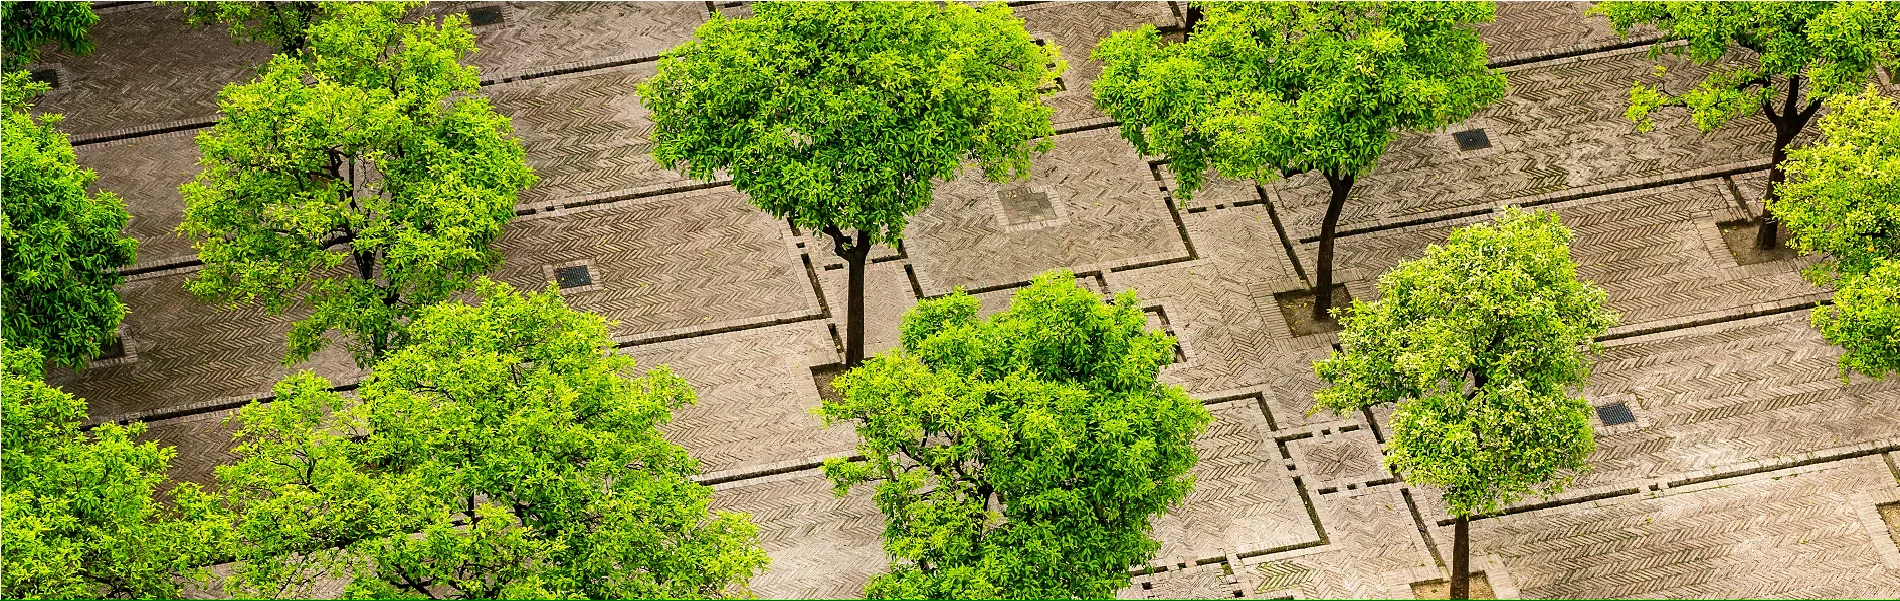 Bomenrijen op een plein